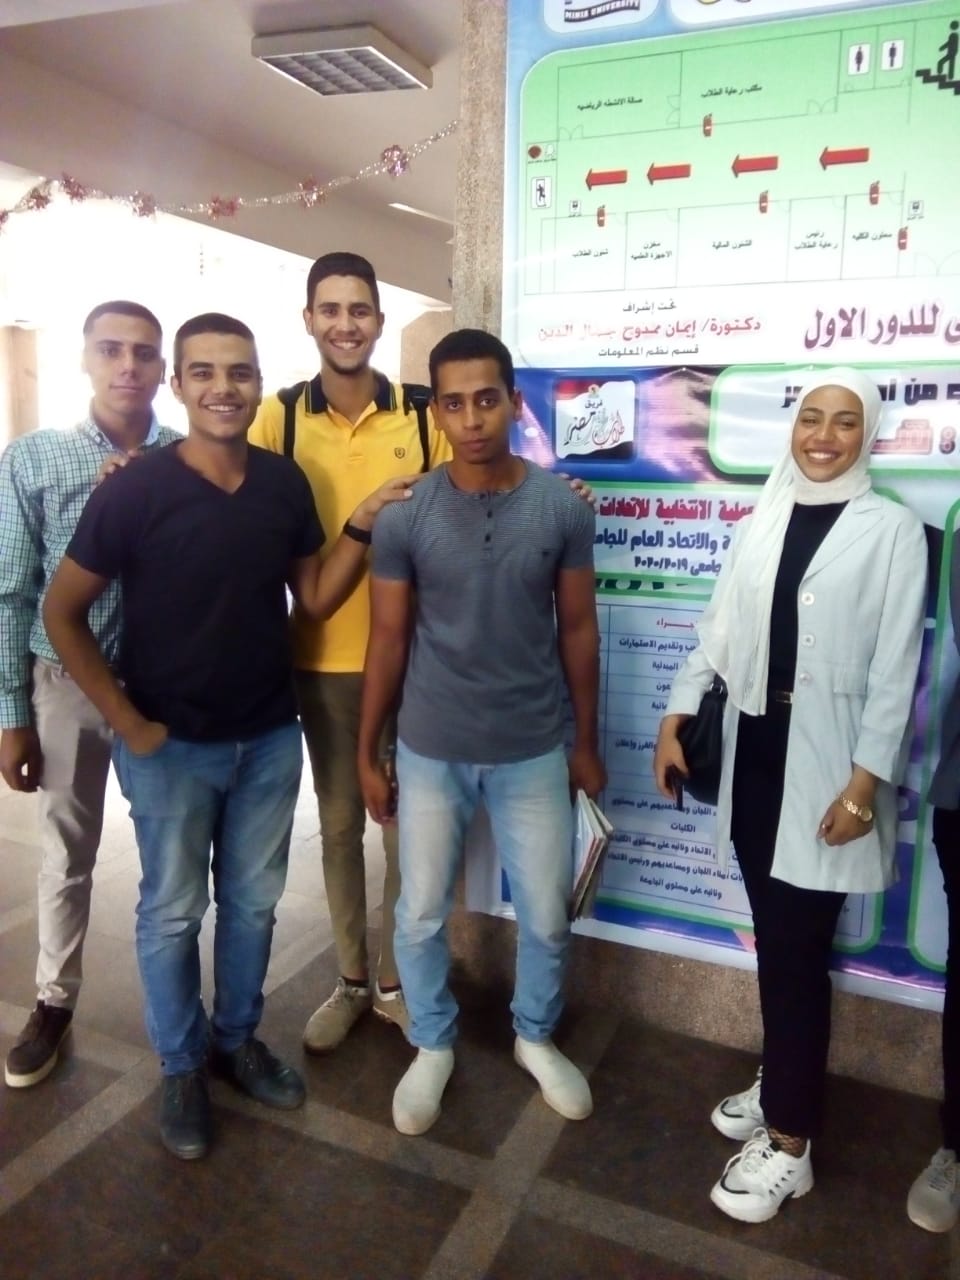 فريق طلاب من أجل مصر بجامعة المنيا يطلق مبادرة شارك للتعريف بالاتحادات الطلابية (5)